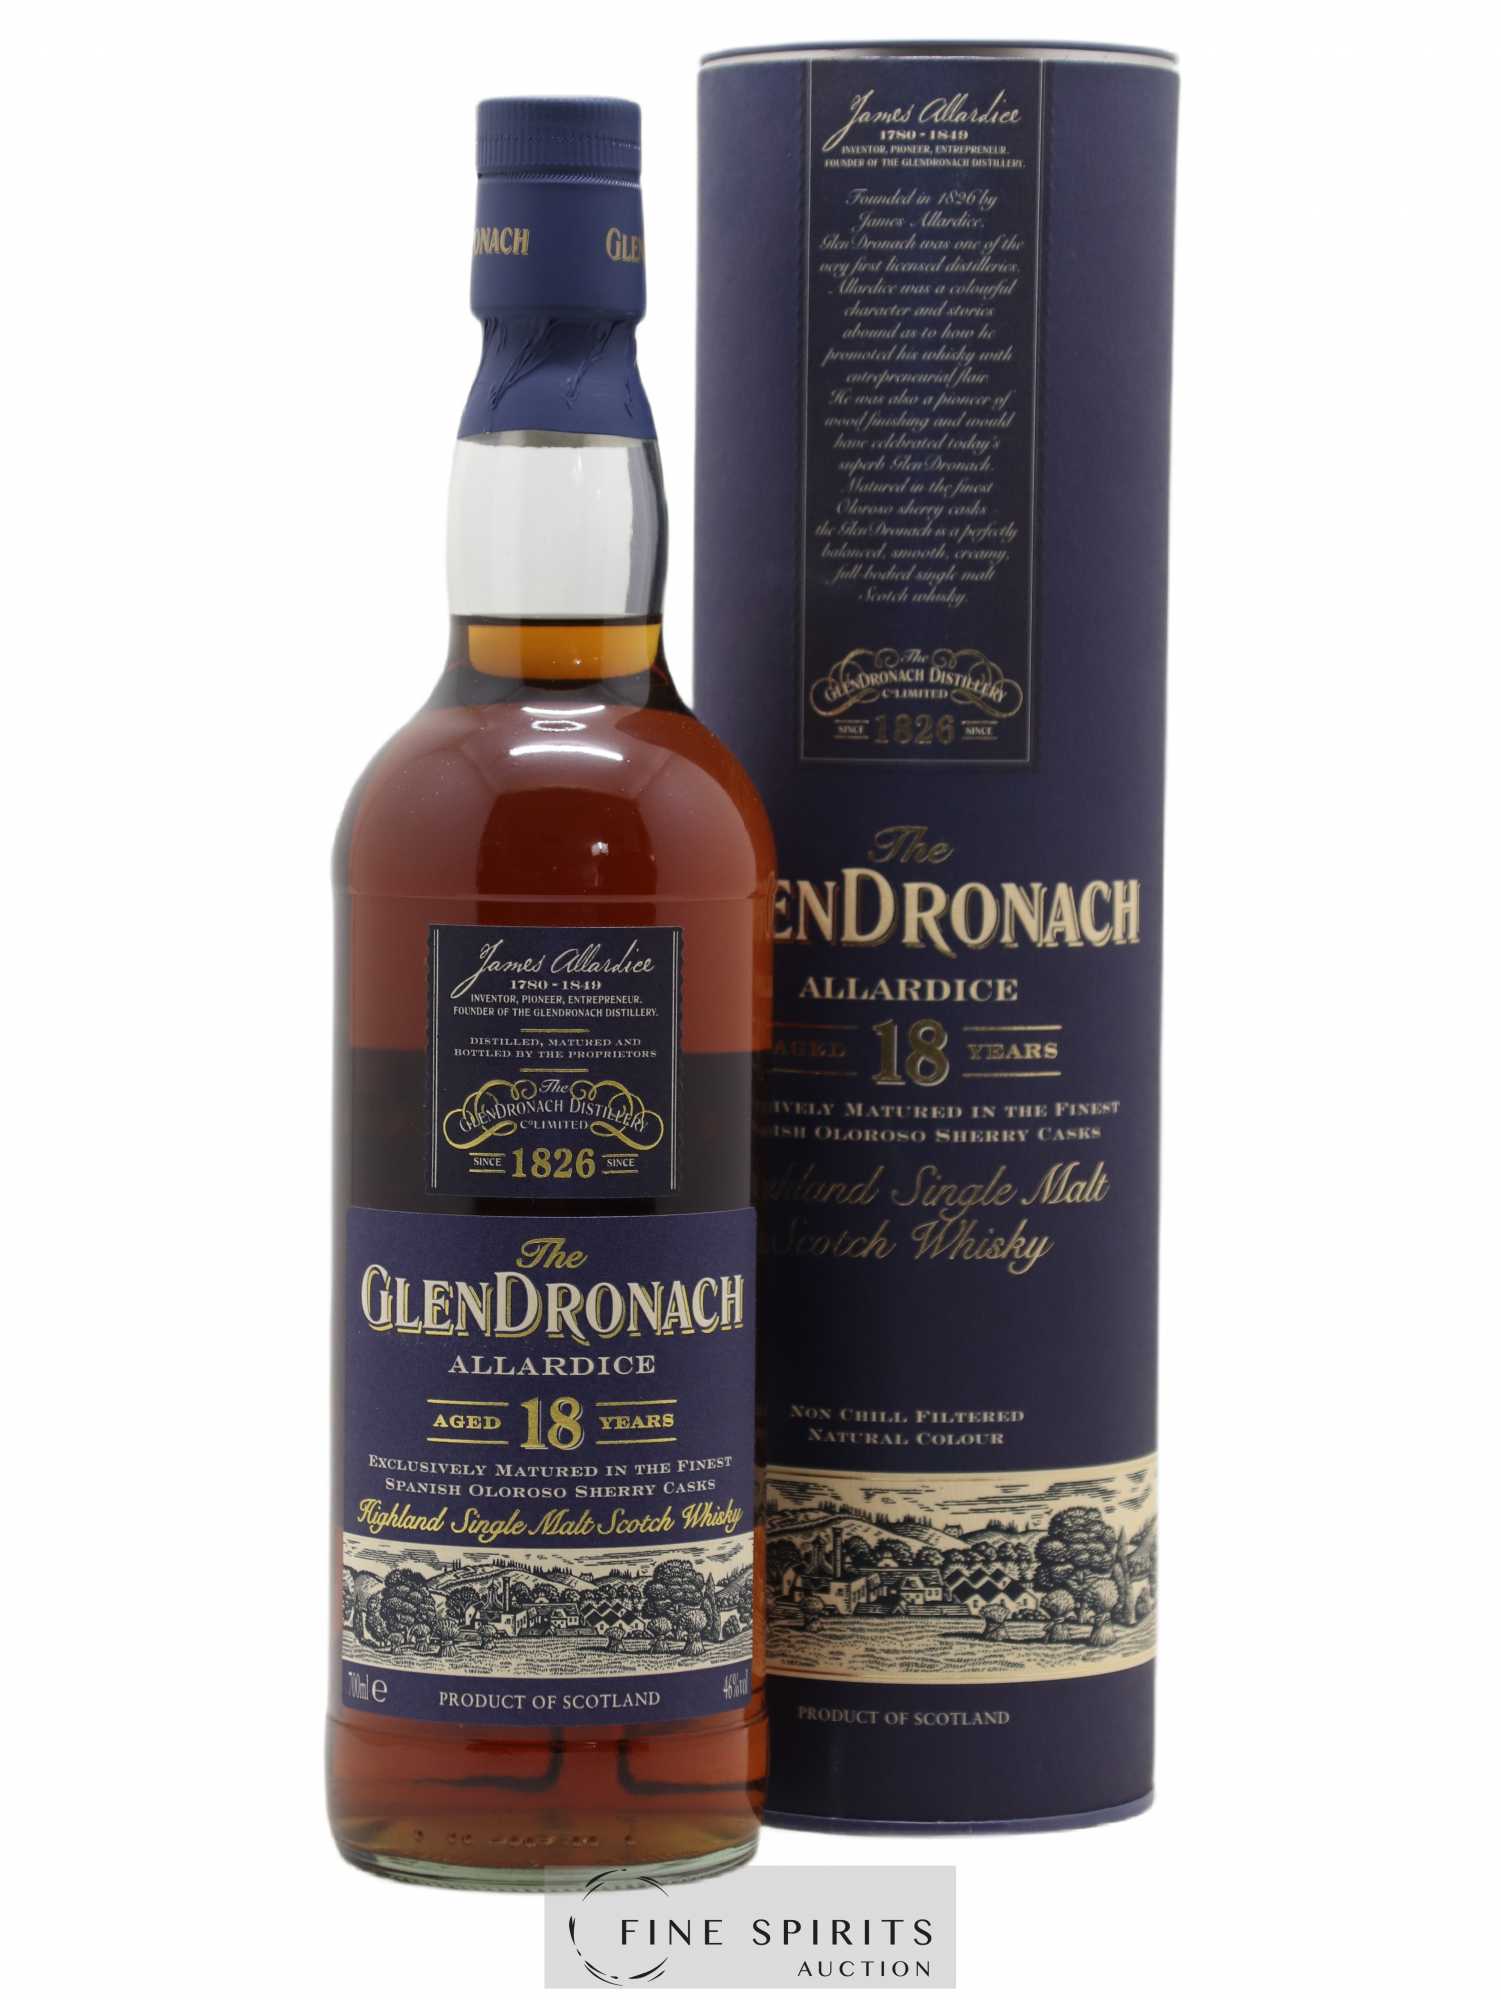 Glendronach 18 years Of. Allardice Lot 1 - One of 6600 - bottled 2009 